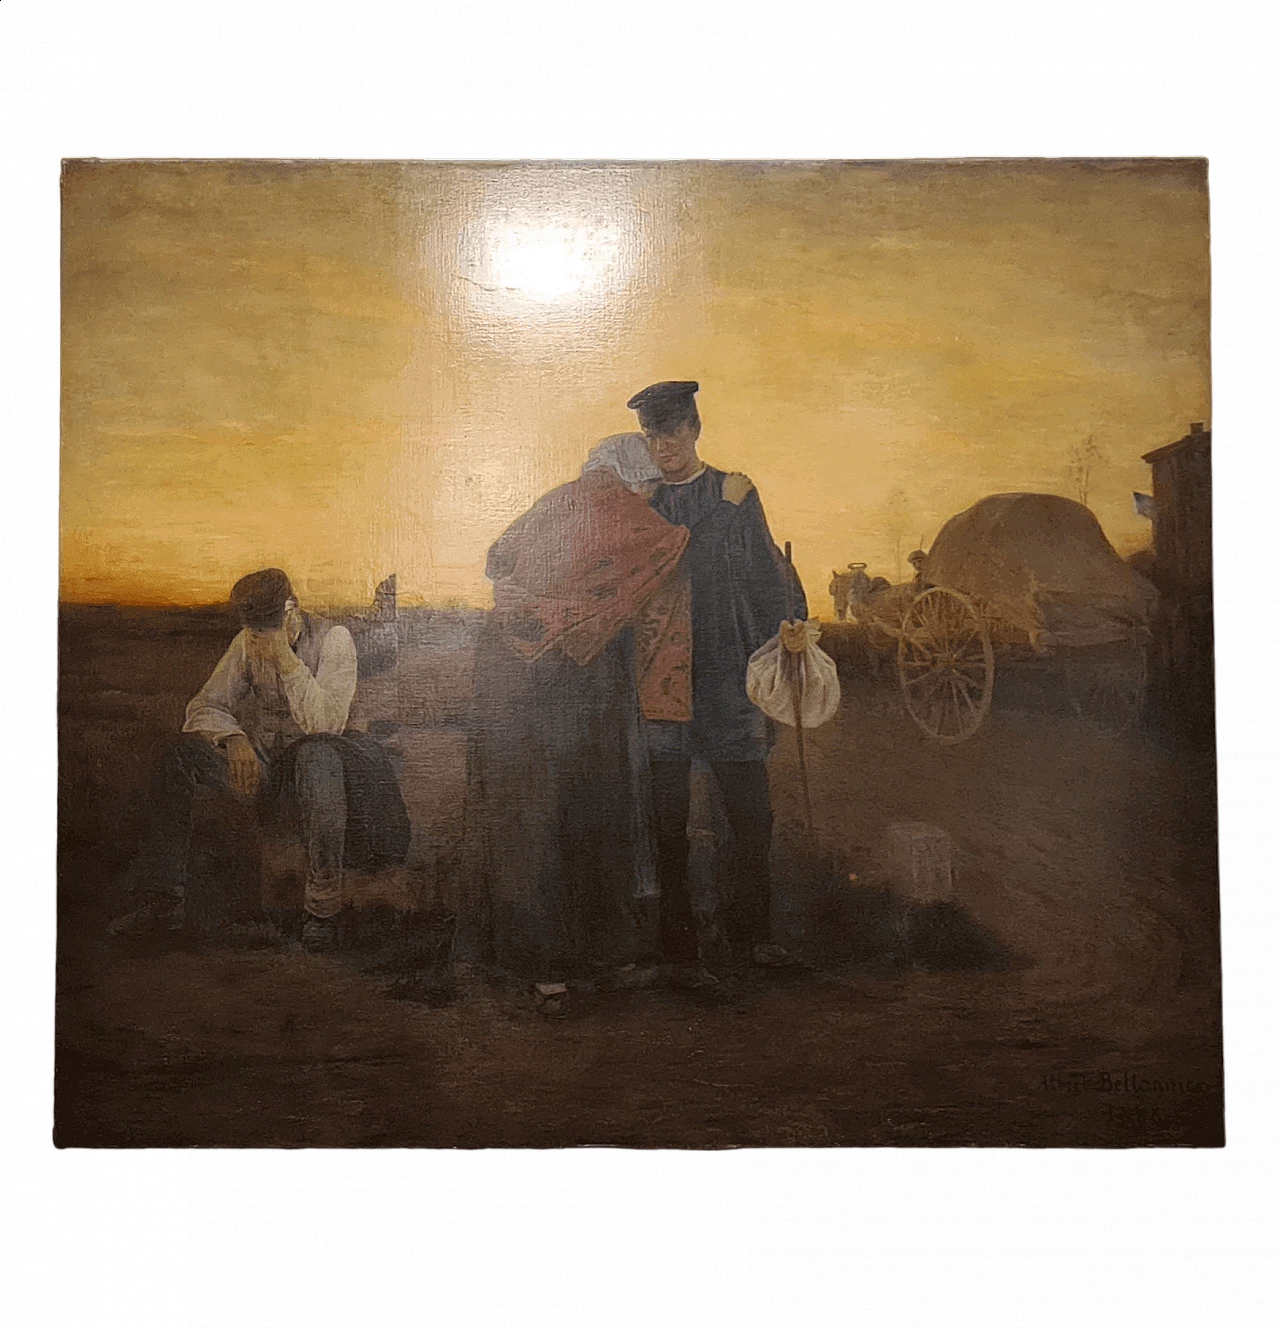 Albert Bettanier, La Depart, olio su tela, 1888 11